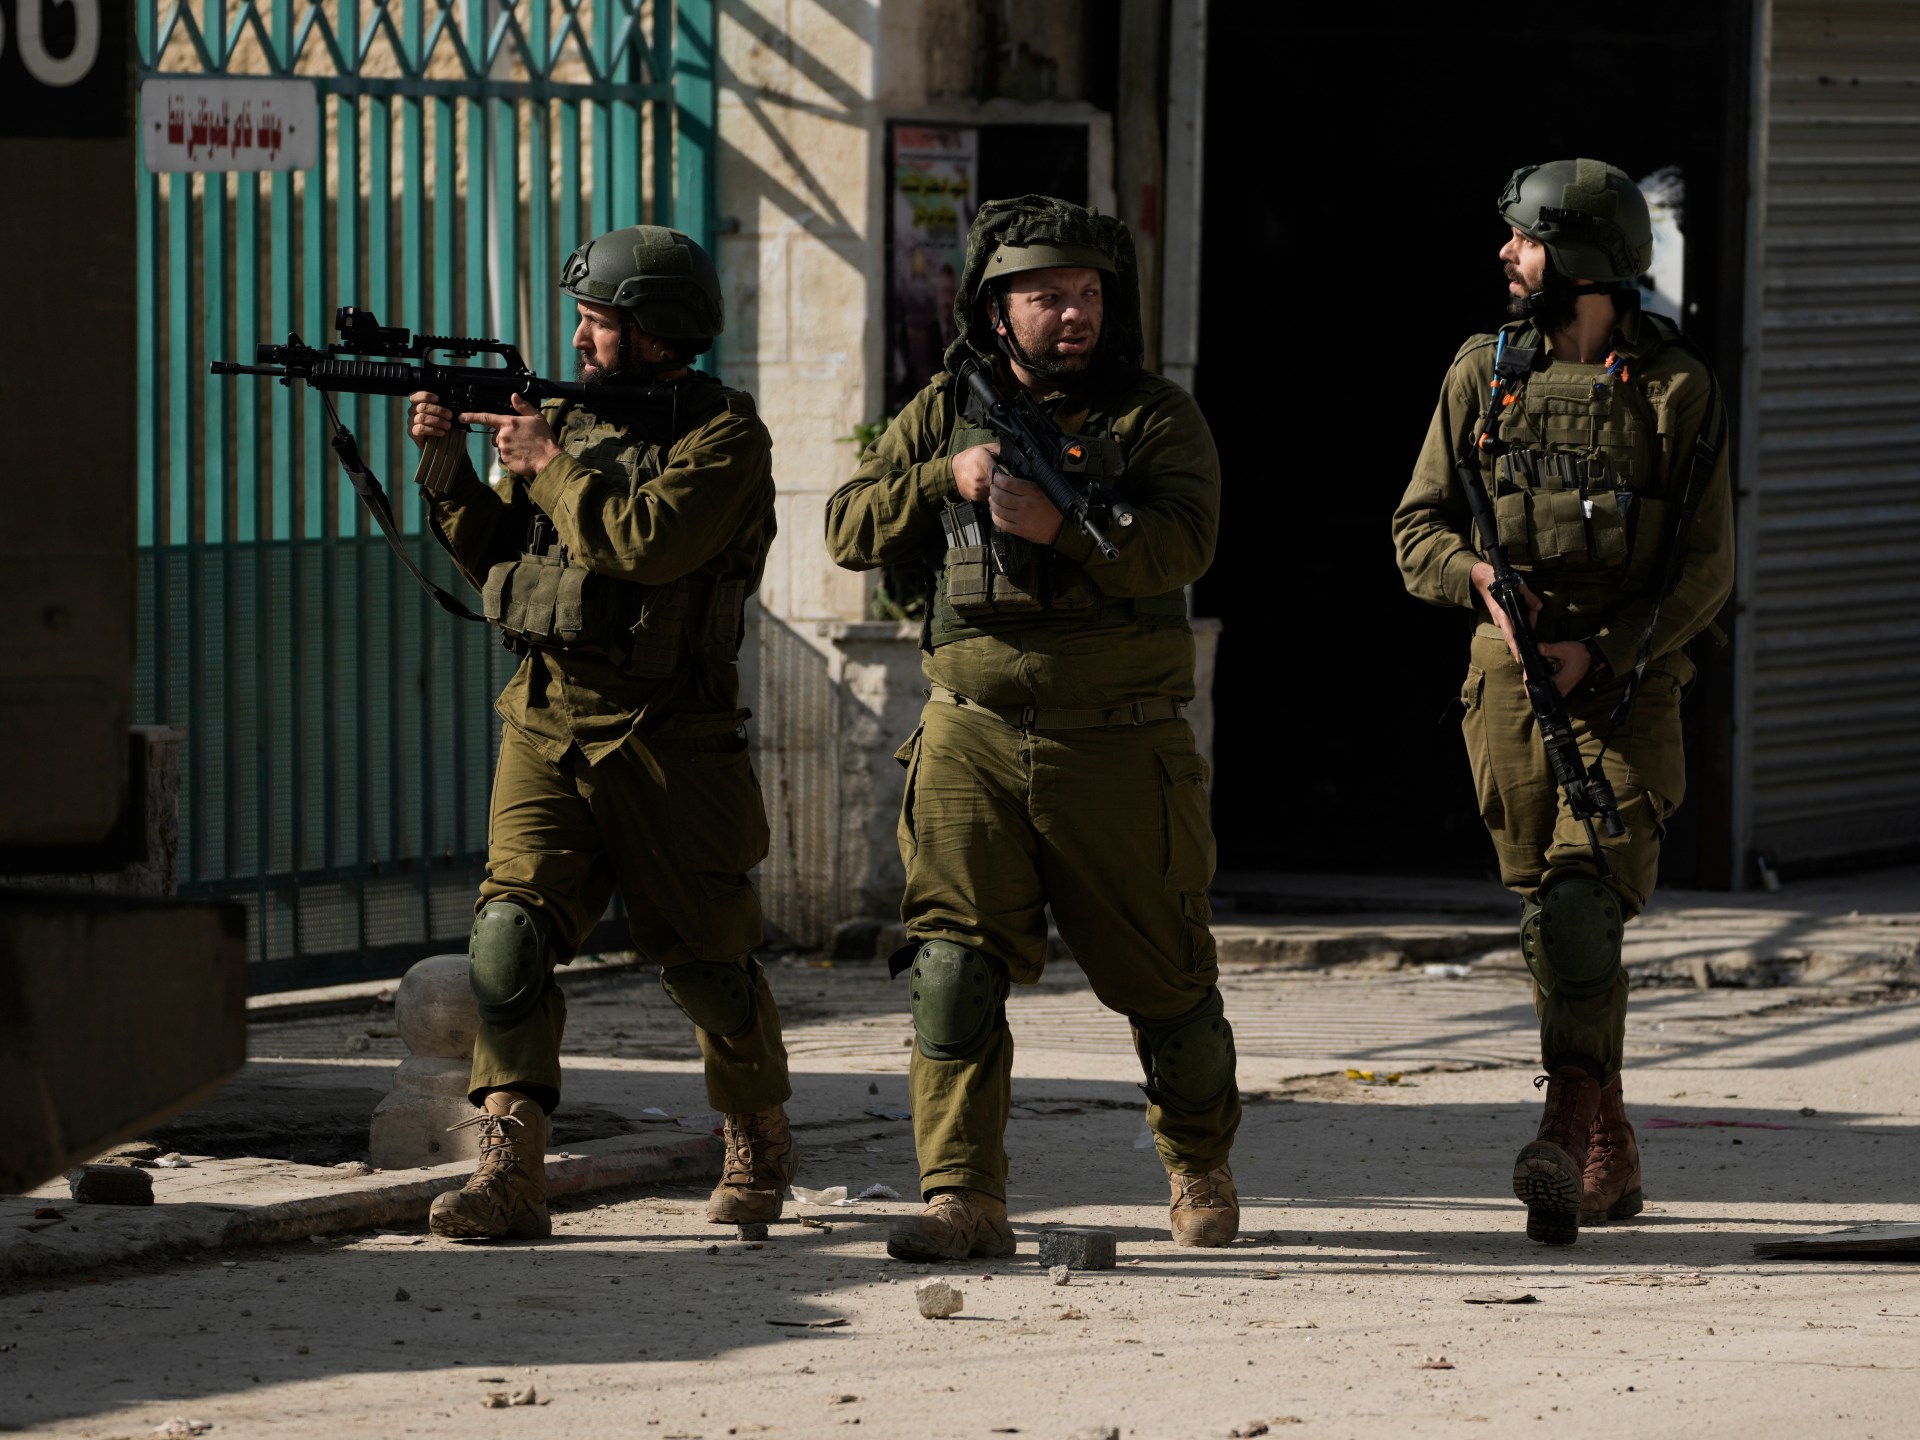 Israeli army raids Jenin, kills several Palestinians | Israel-Palestine conflict News #Israeli #army #raids #Jenin #kills #Palestinians #IsraelPalestine #conflict #News